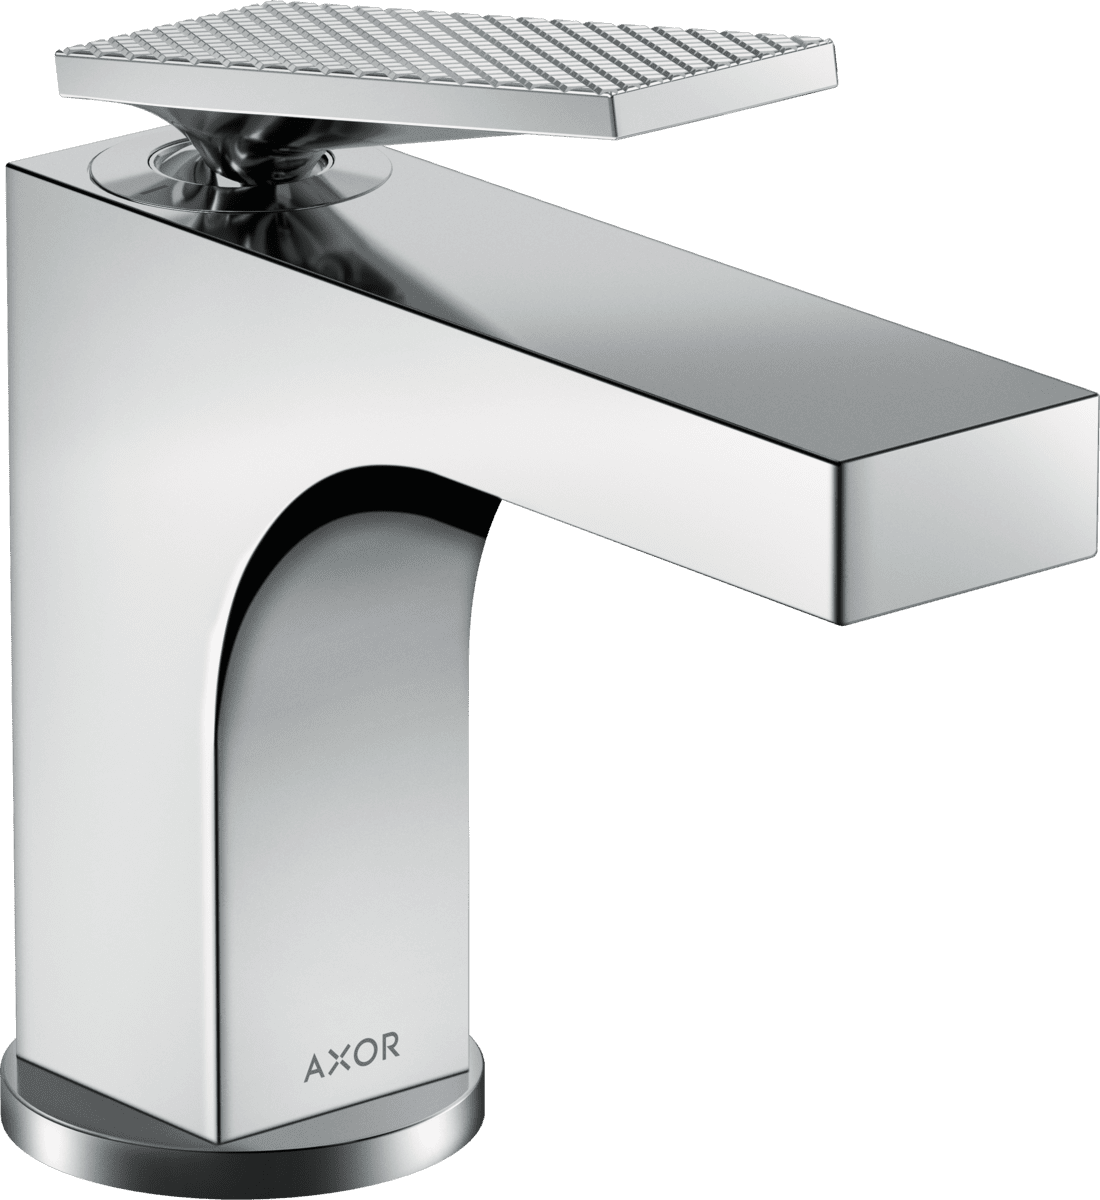 εικόνα του HANSGROHE AXOR Citterio Single lever basin mixer 90 with lever handle for hand wash basins with pop-up waste set - rhombic cut #39001000 - Chrome